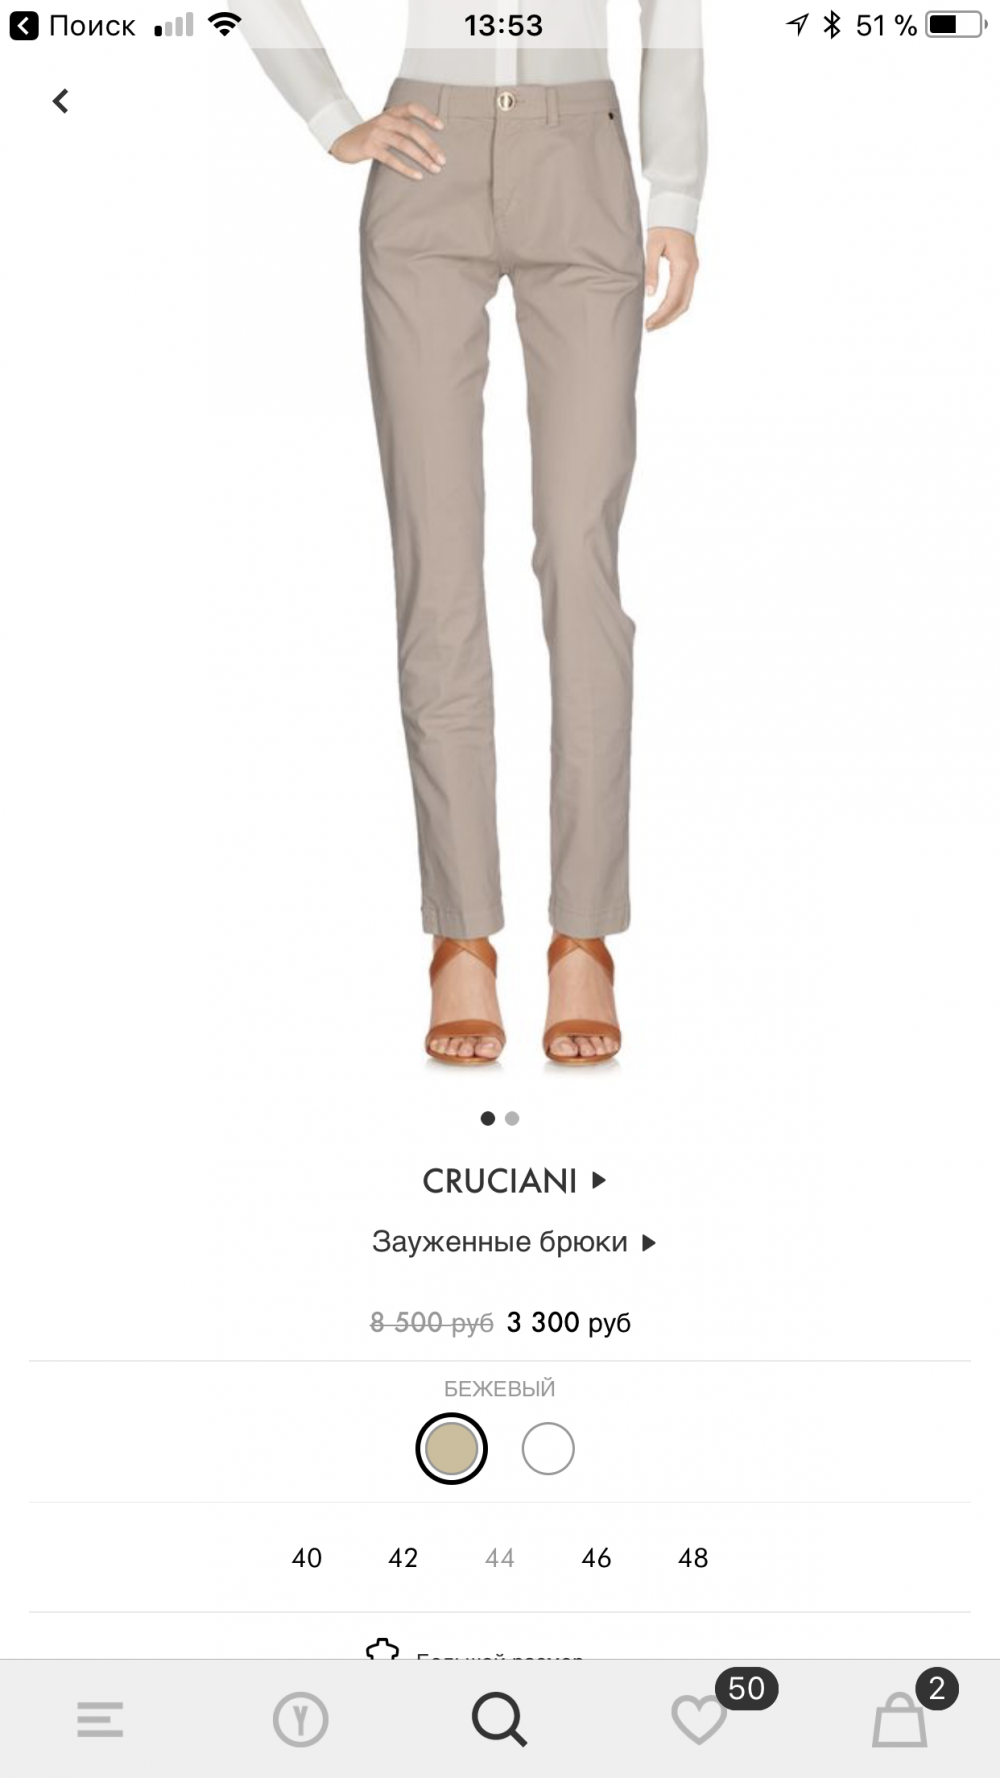 Прекрасные базовые брюки Cruciani 42IT новые, оригинал